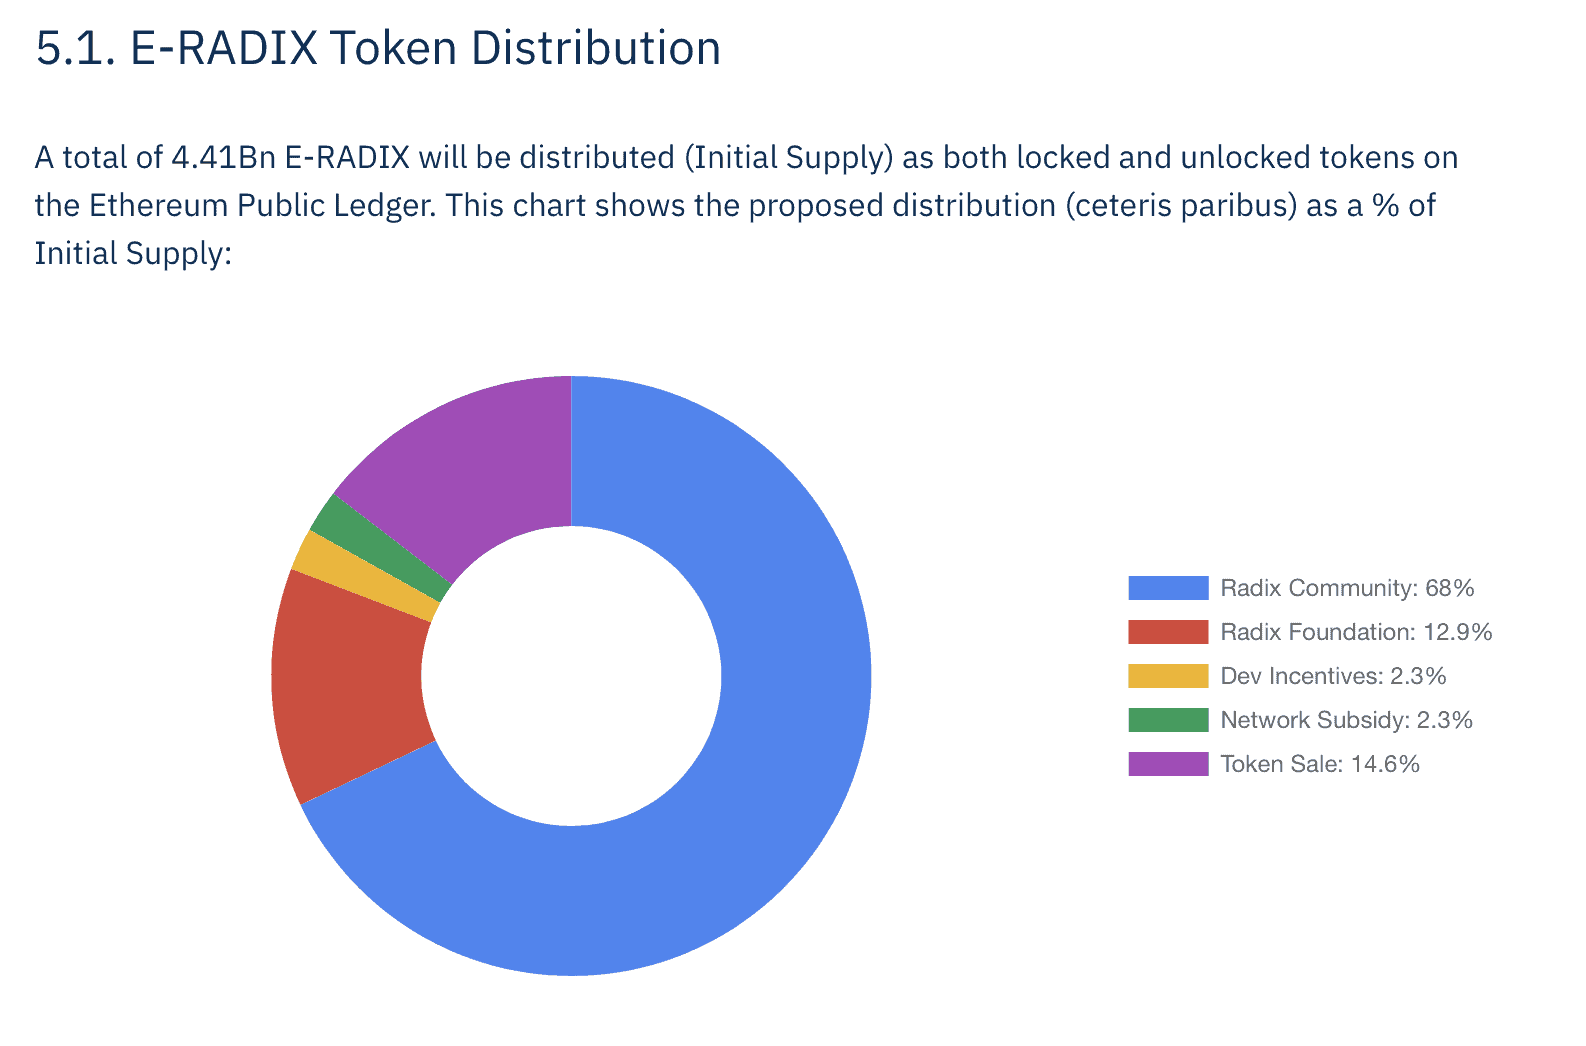 radix tokens